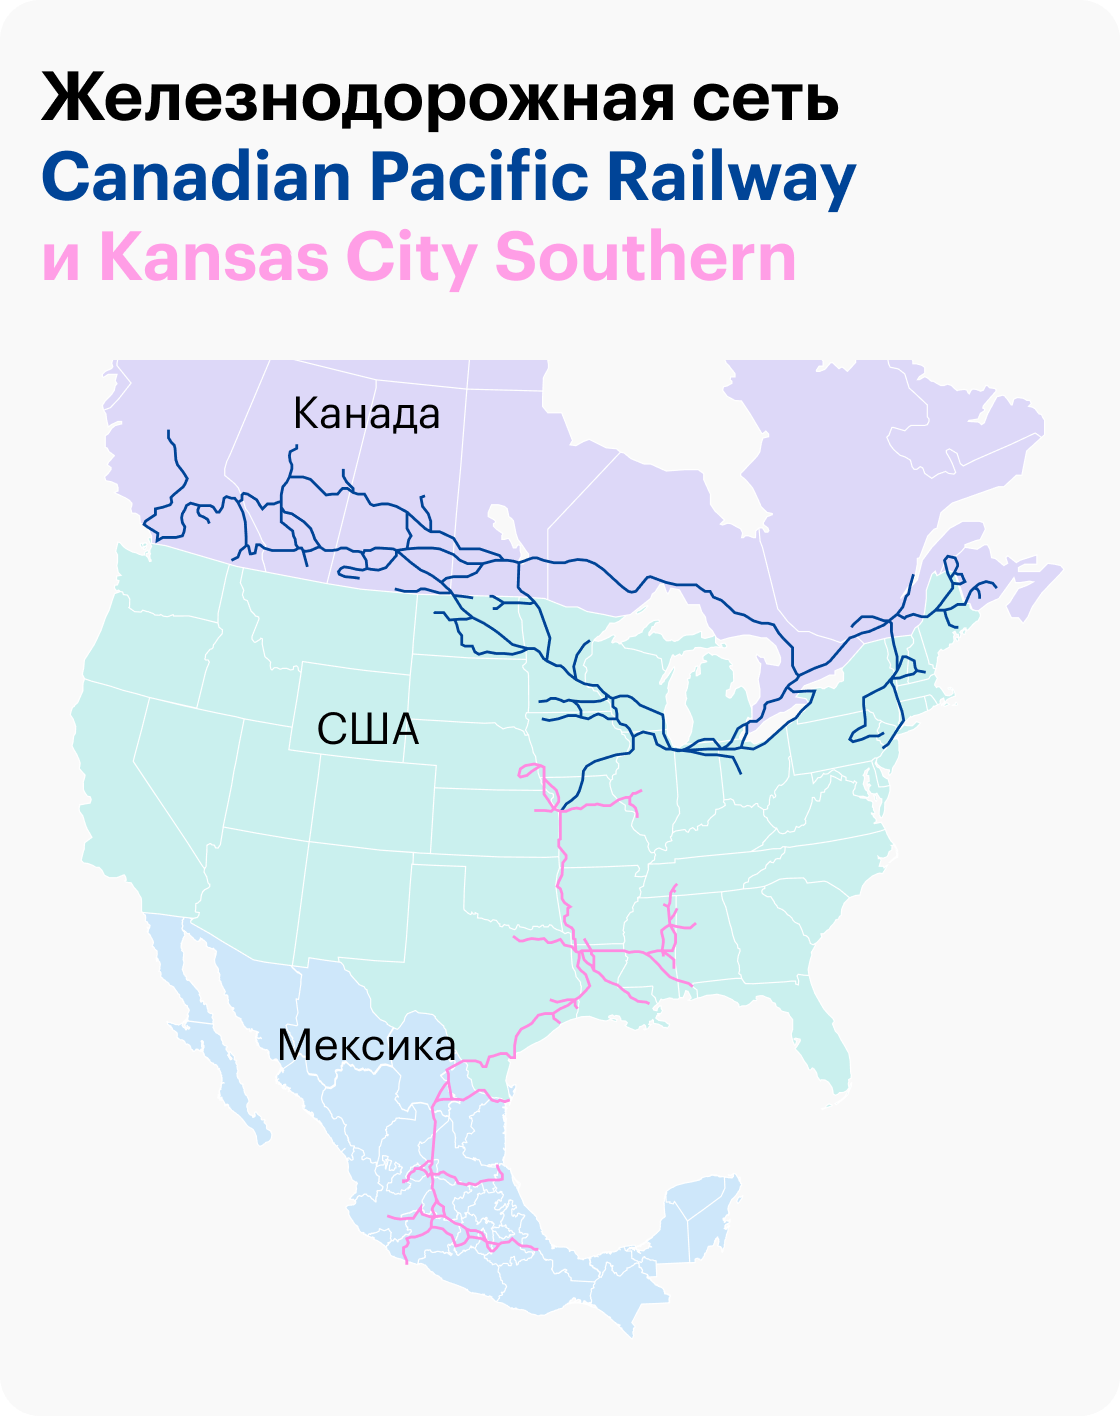 Источник: годовой отчет Canadian Pacific Railway, стр. 17